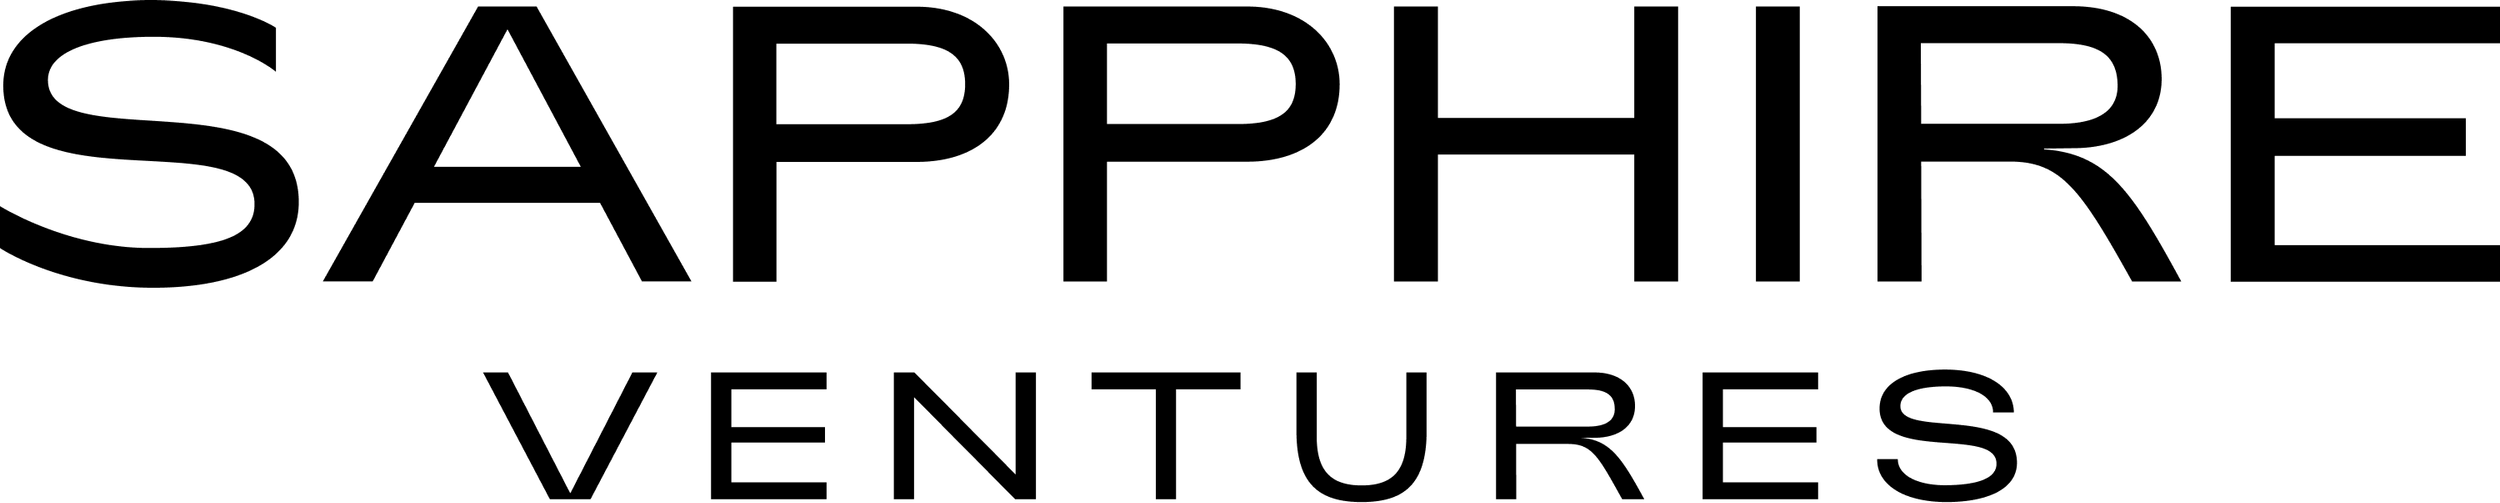 SV Logo Black.png